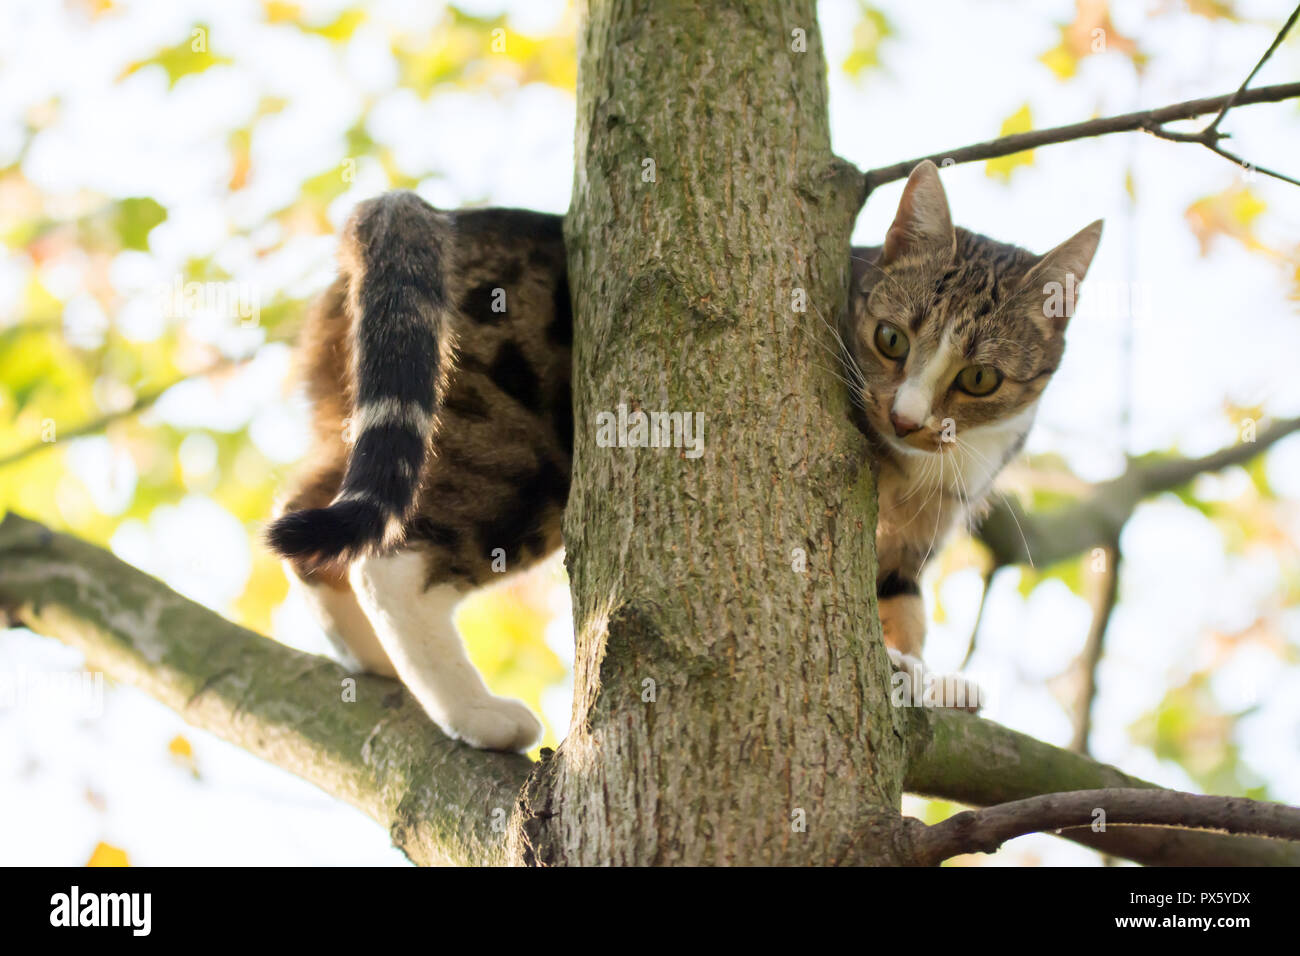 Negro, beige y blanco gato caminando sobre las ramas altas de un árbol de arce Foto de stock